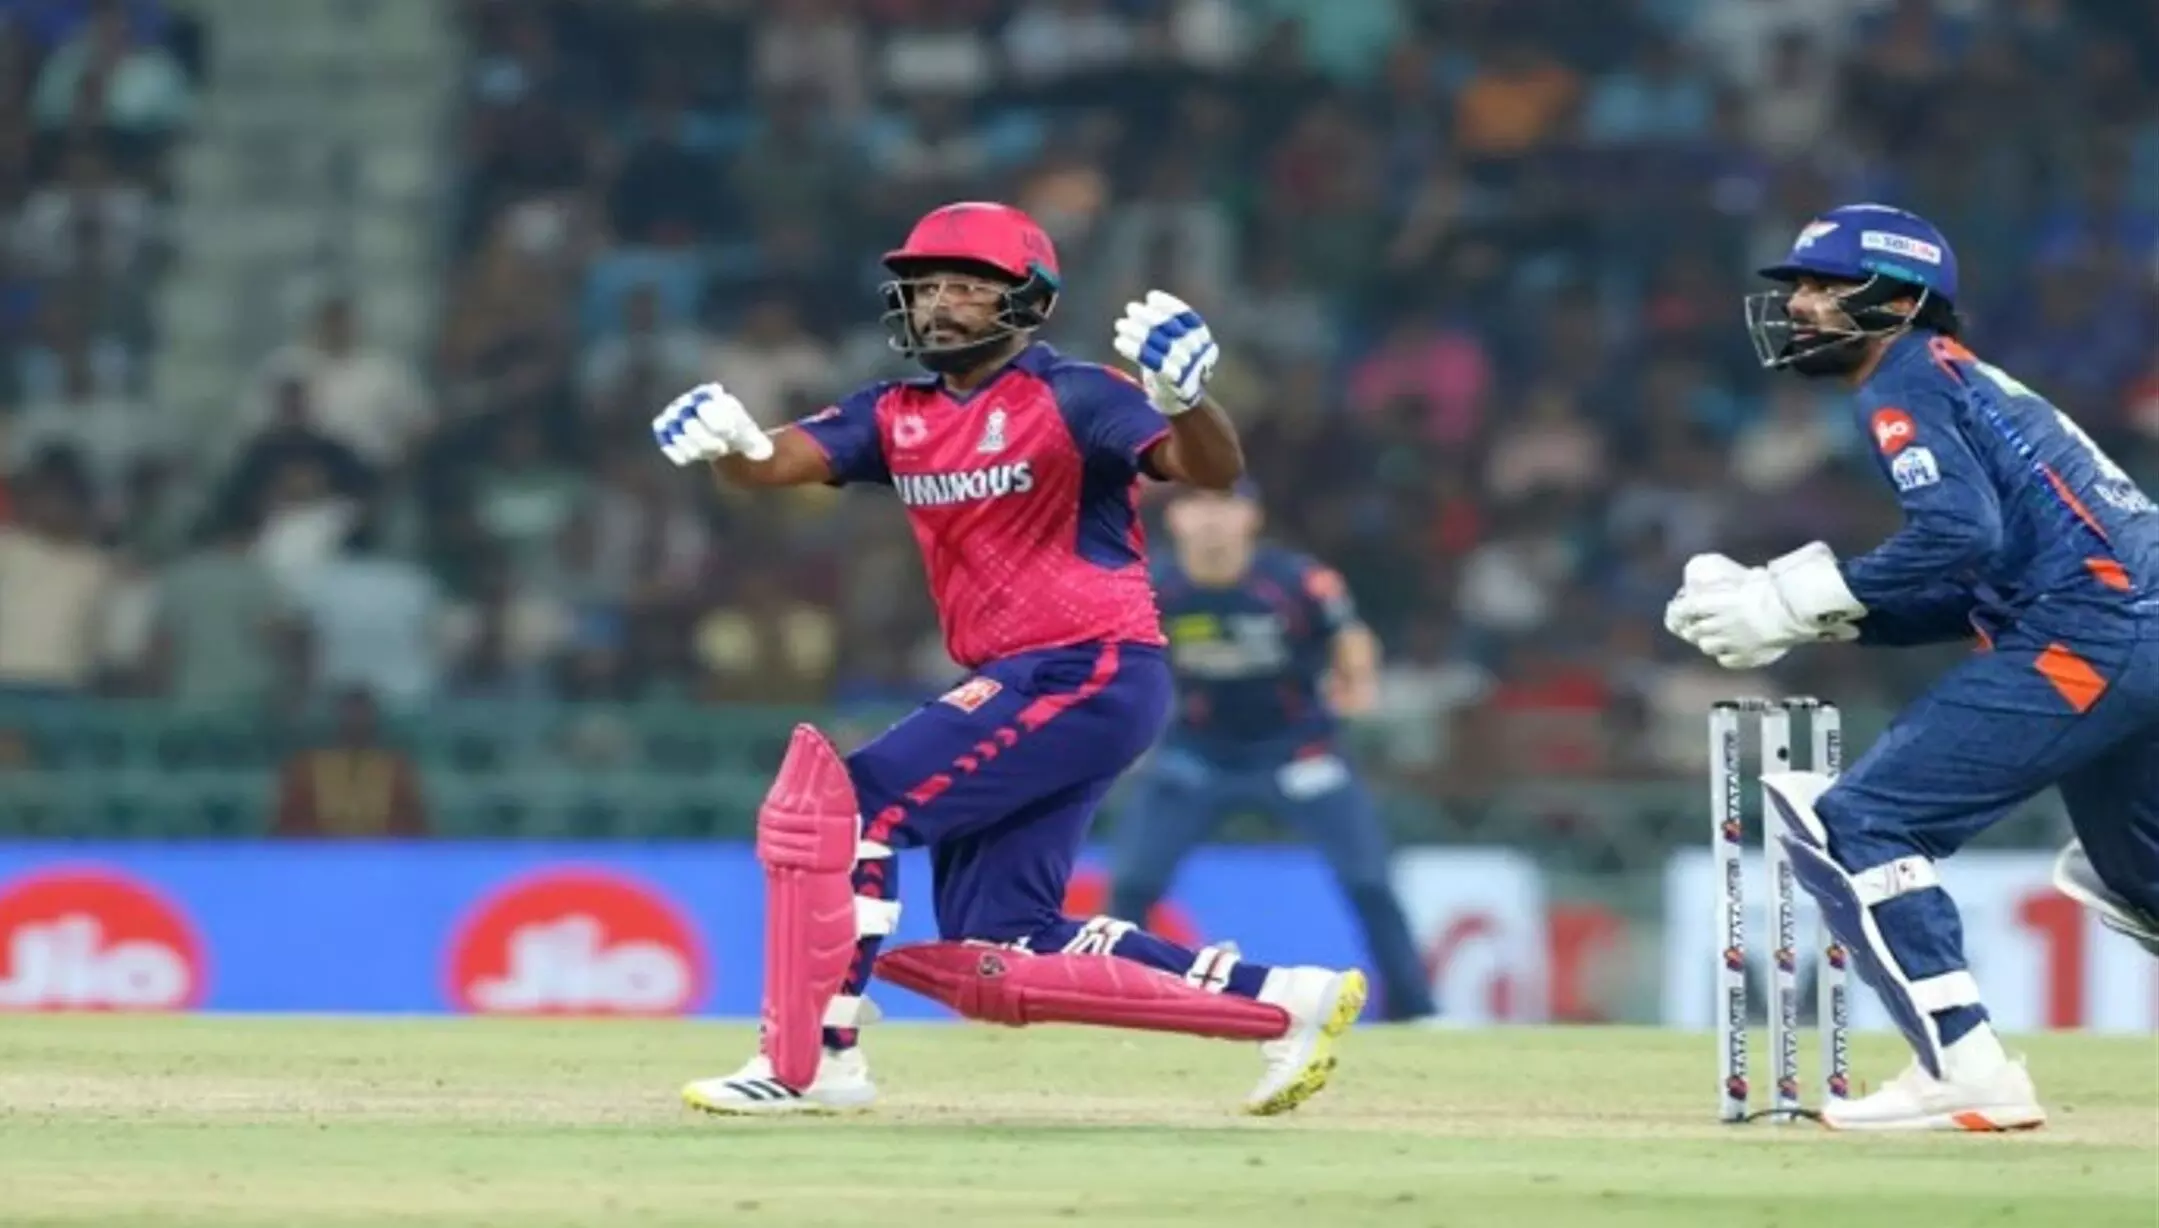 LSG vs RR : राजस्थान रॉयल्स ने लगाया जीत का चौका, घरेलू मैदान पर 7 विकेट से हारी लखनऊ सुपर जायंट्स